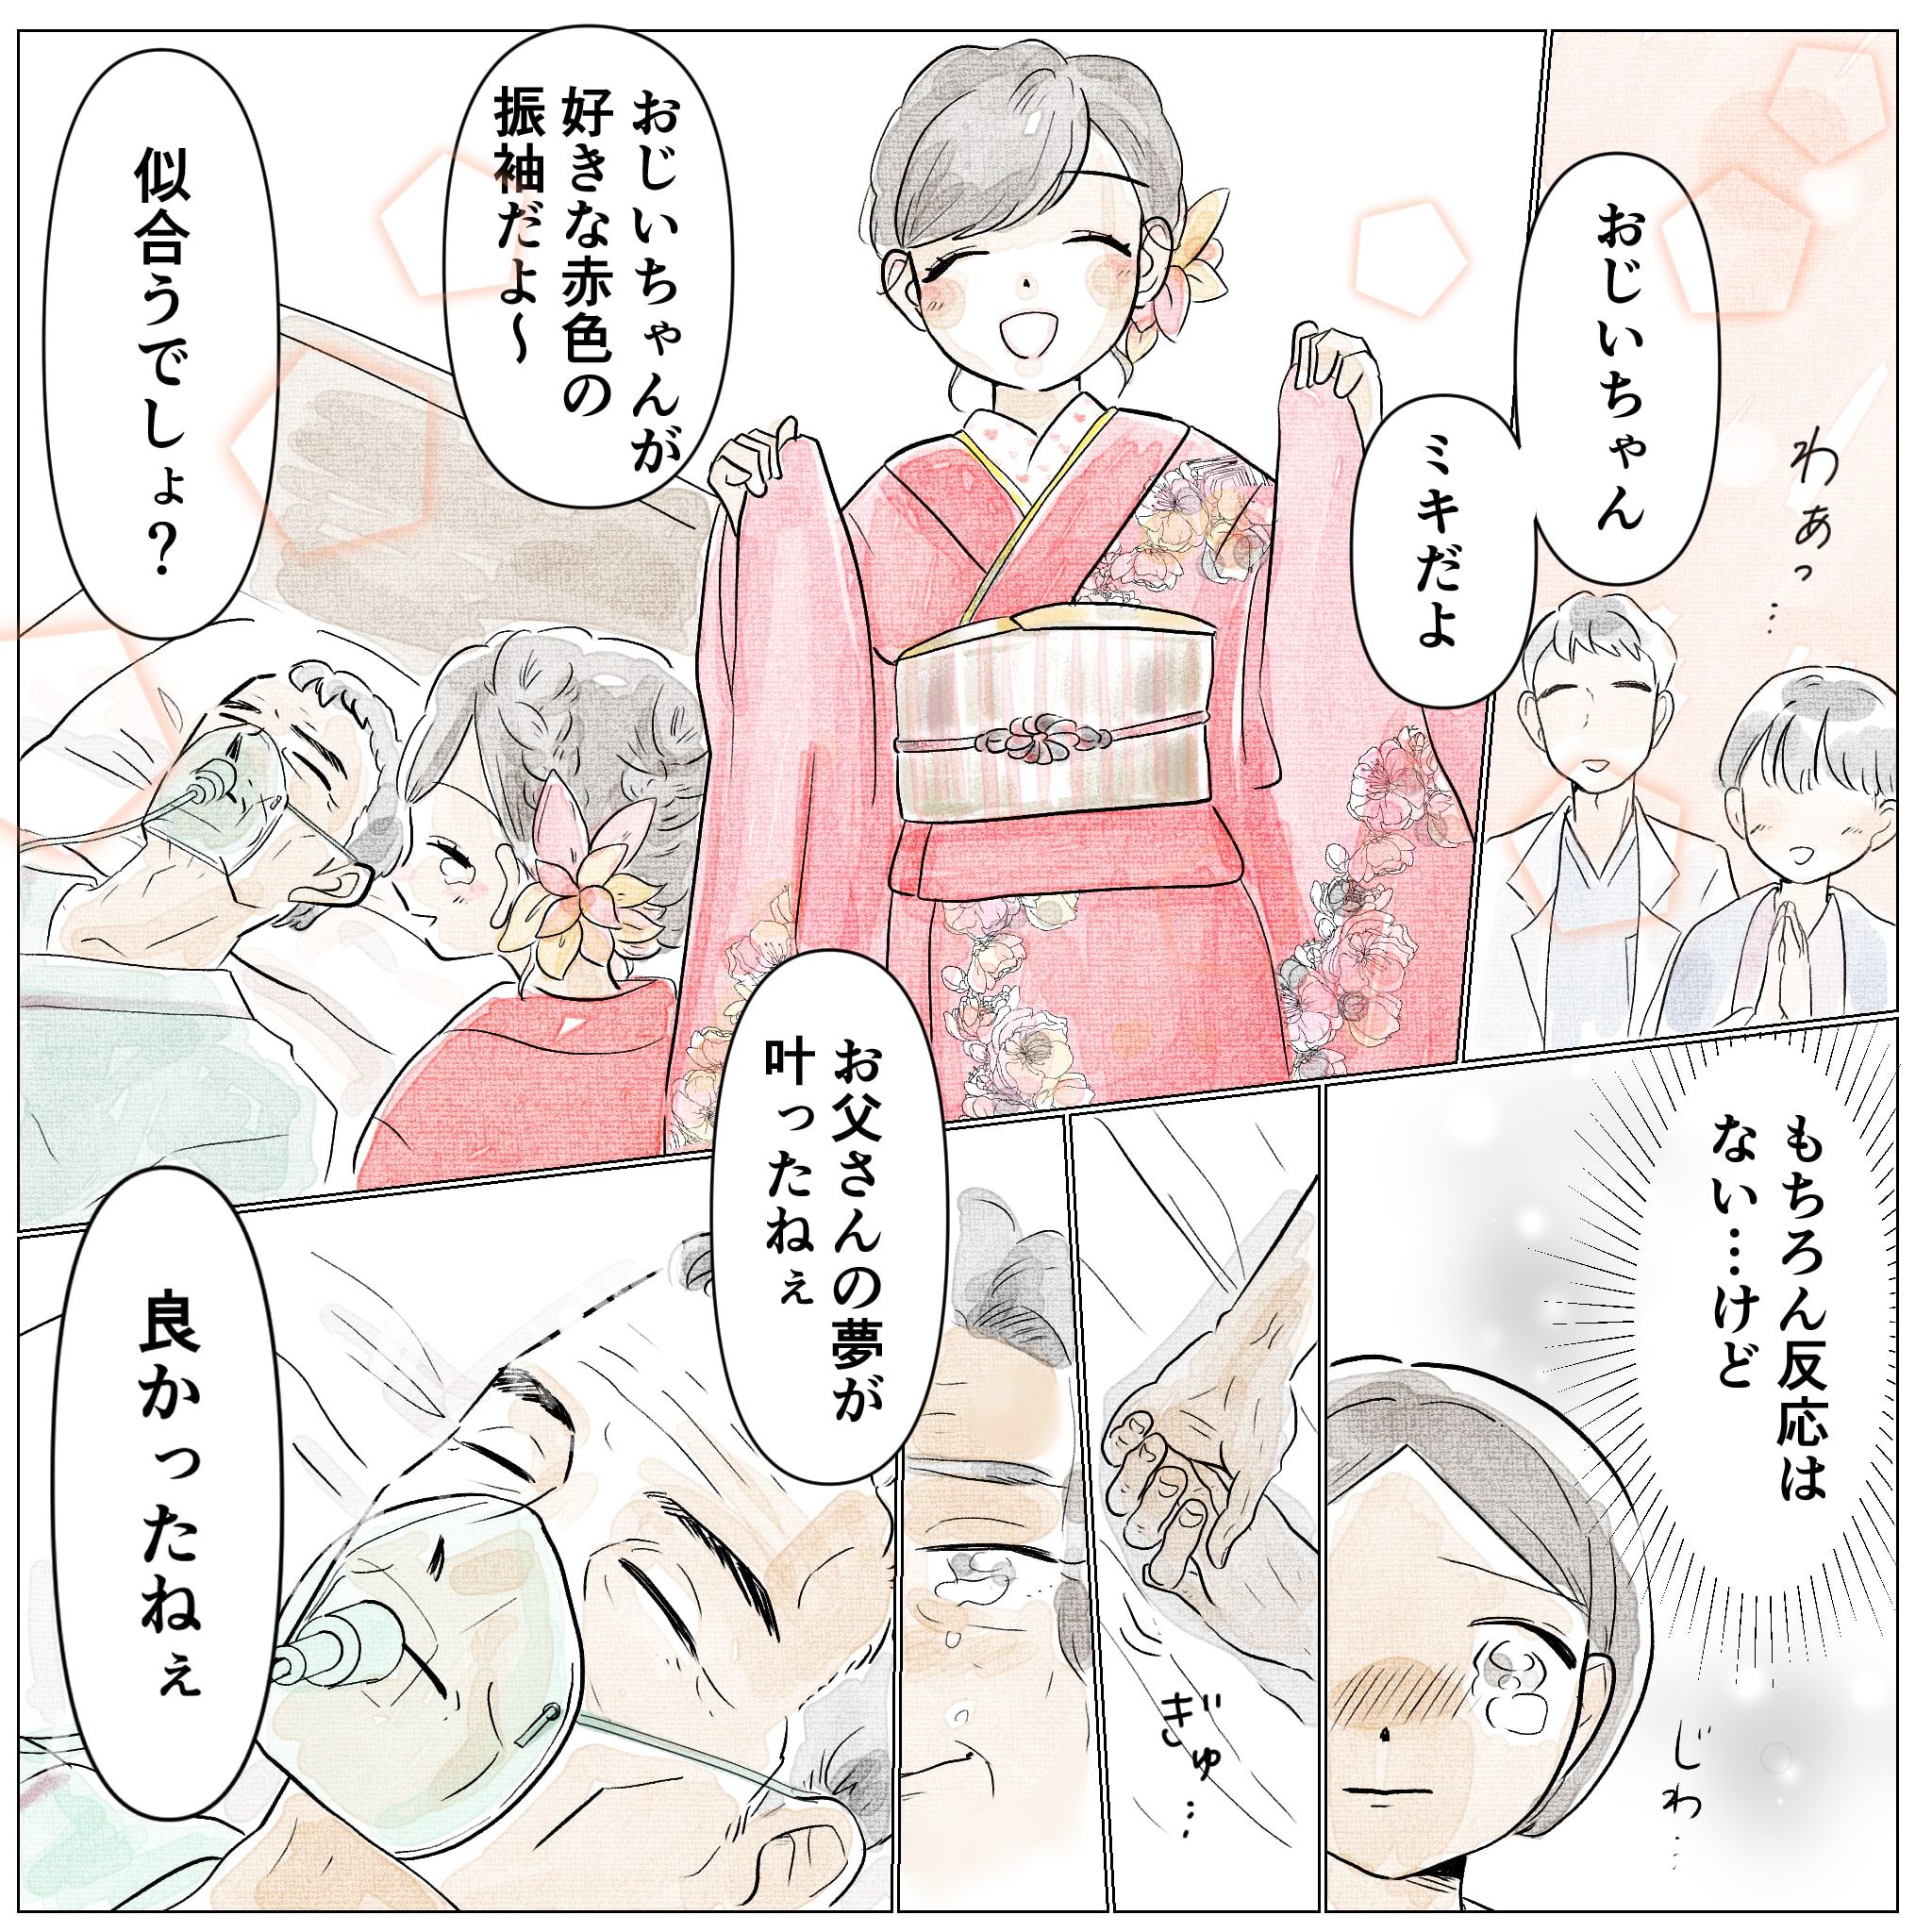 孫が赤い振袖姿で朝倉さんの病室に来られ、反応はないが夢をかなえることができた